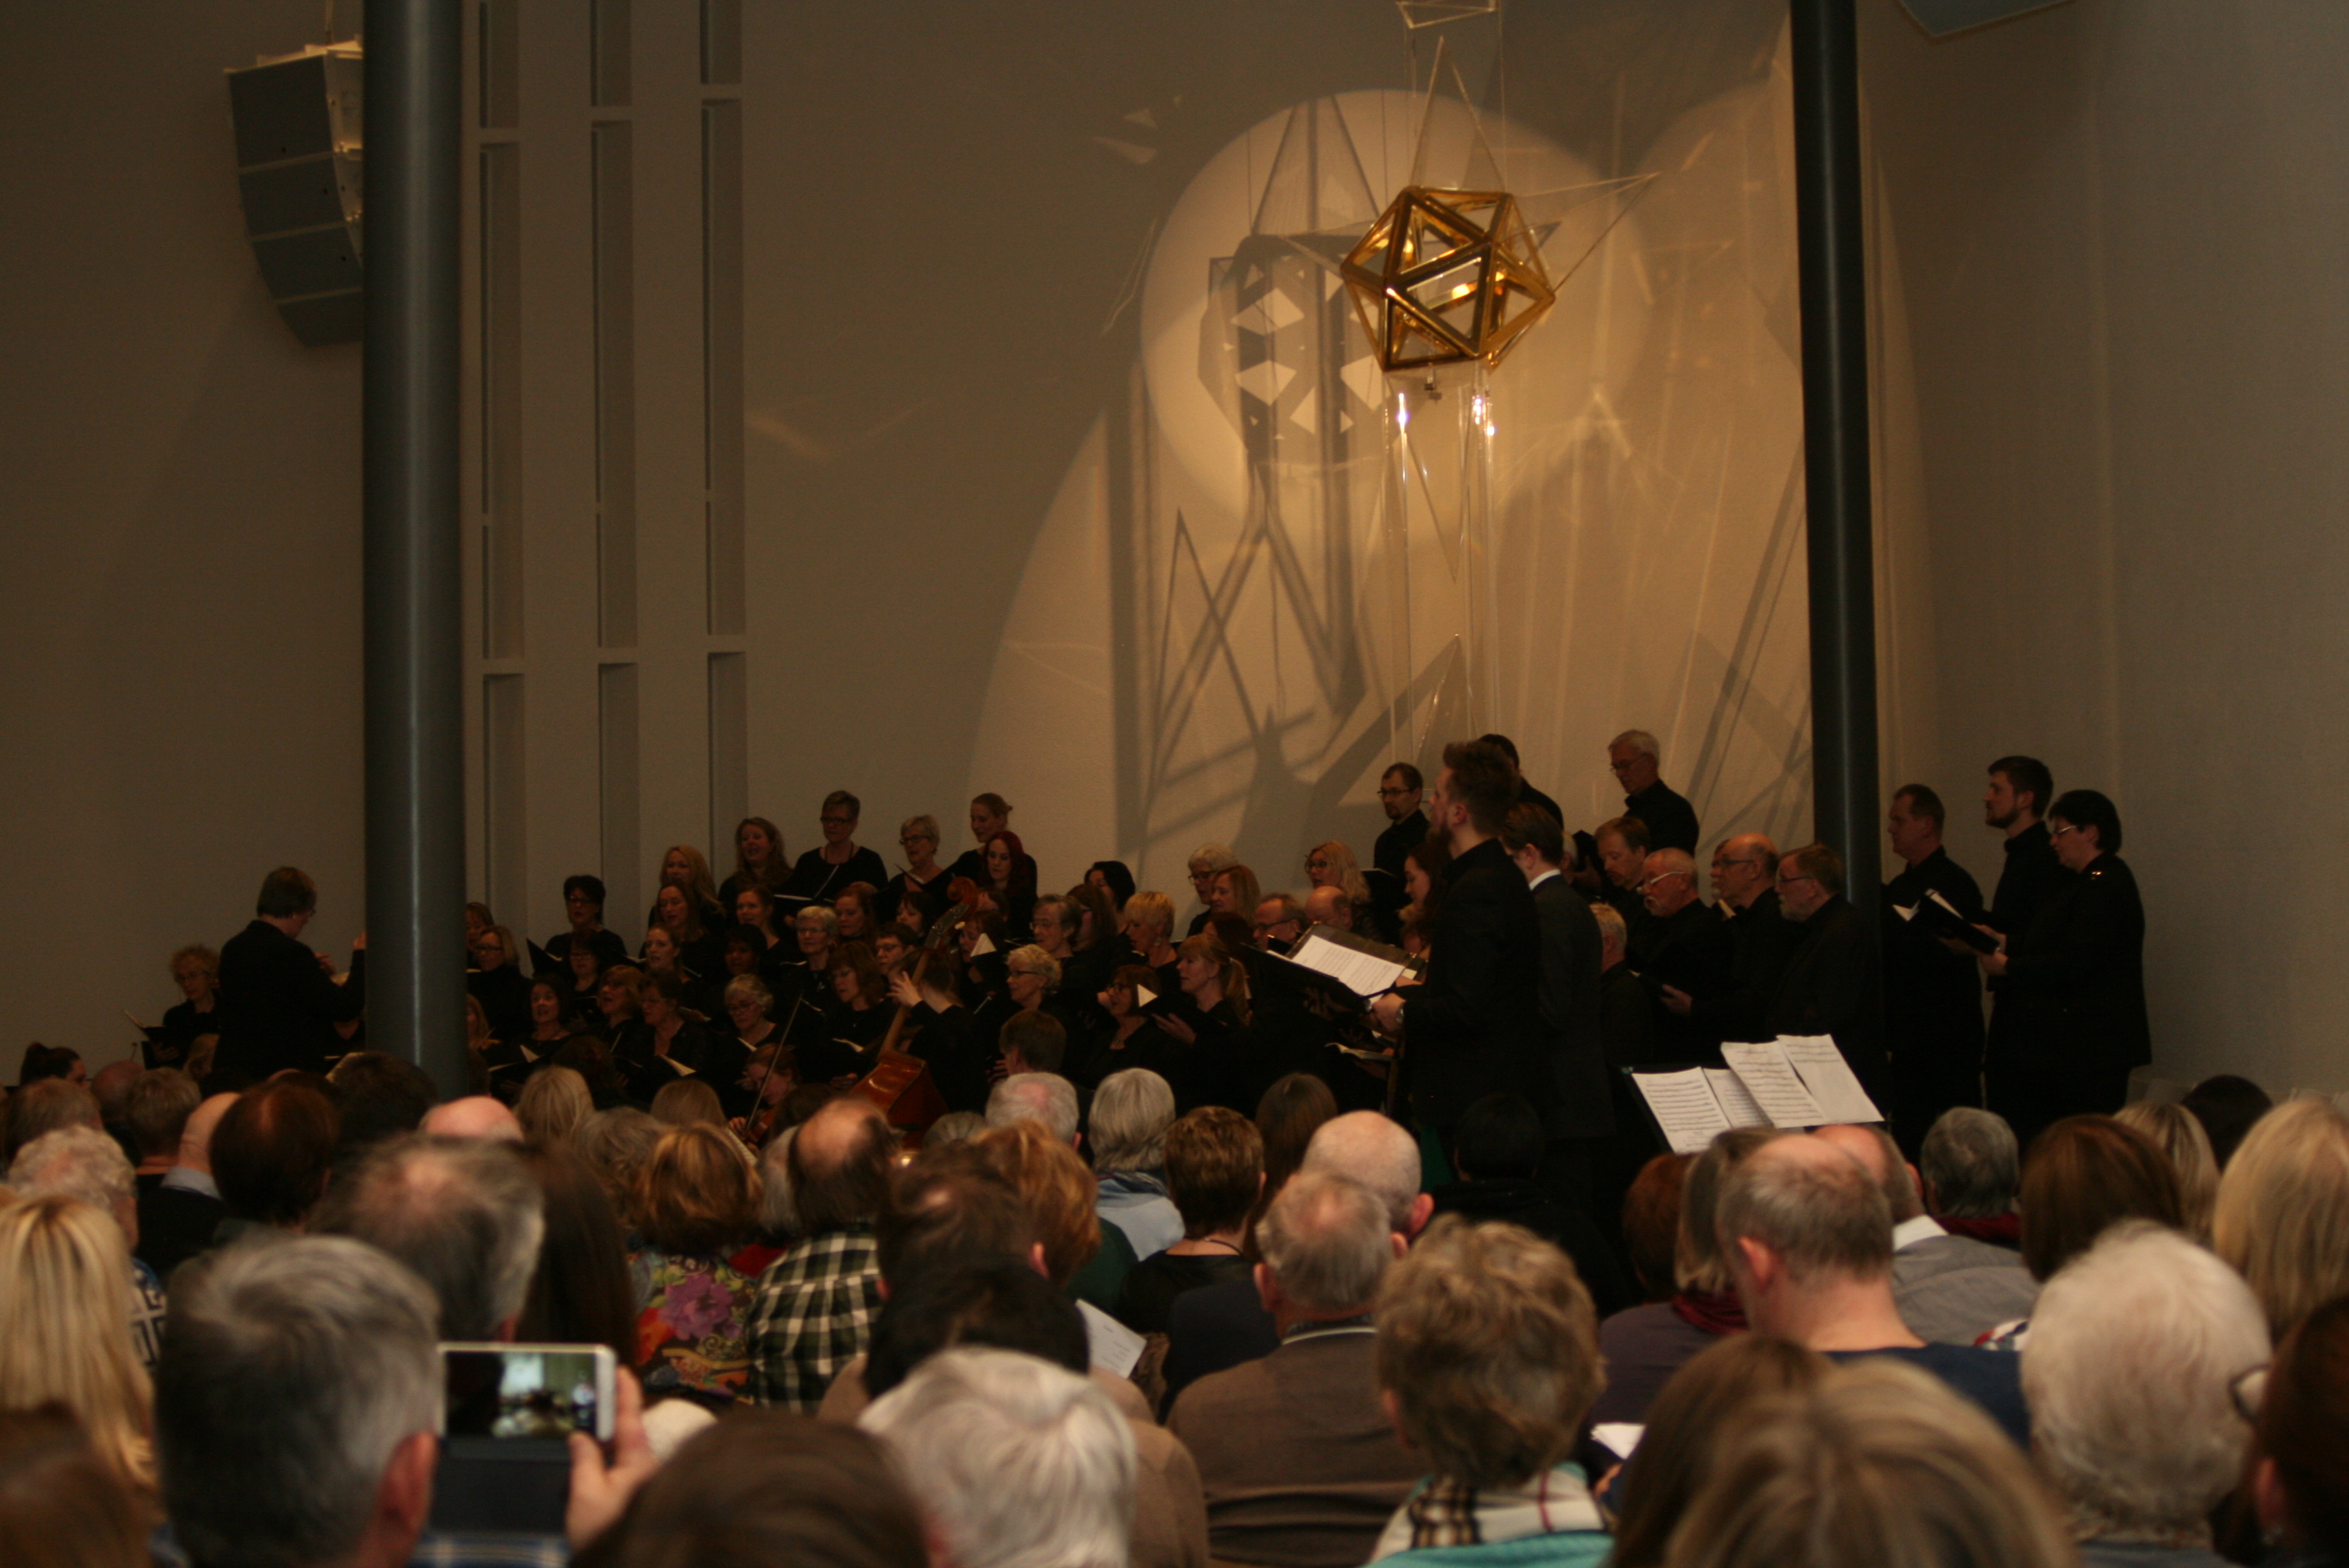 Konsert i Jessheim kirke 7. mars